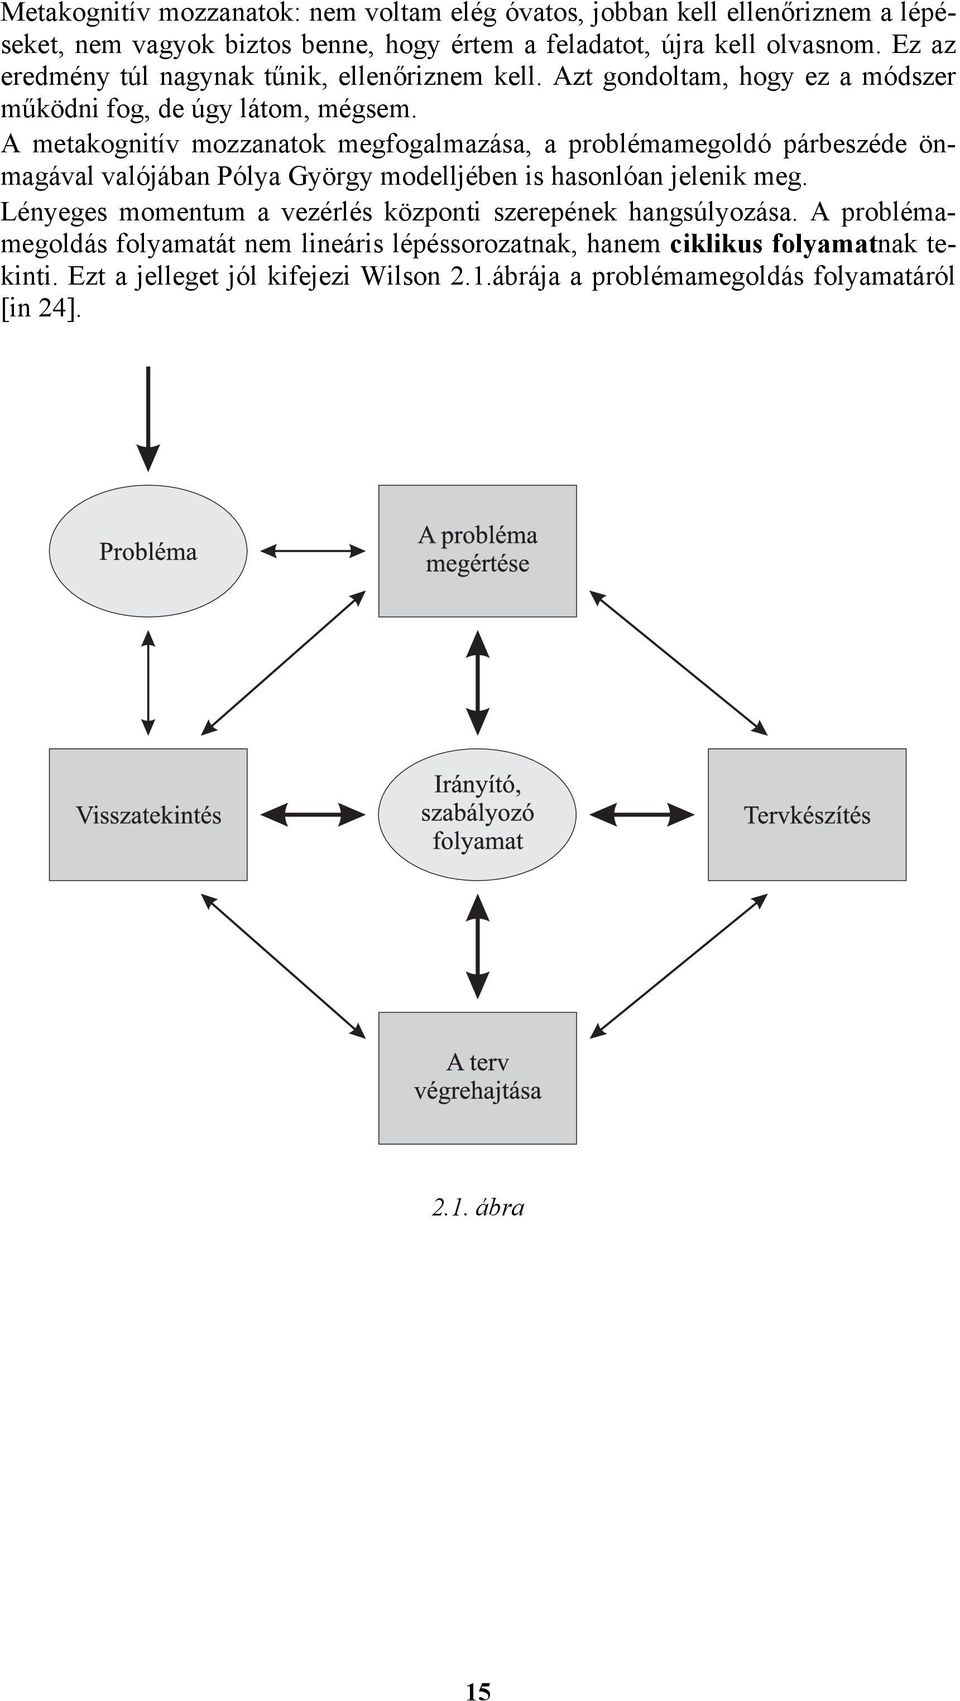 A metakognitív mozzanatok megfogalmazása, a problémamegoldó párbeszéde önmagával valójában Pólya György modelljében is hasonlóan jelenik meg.